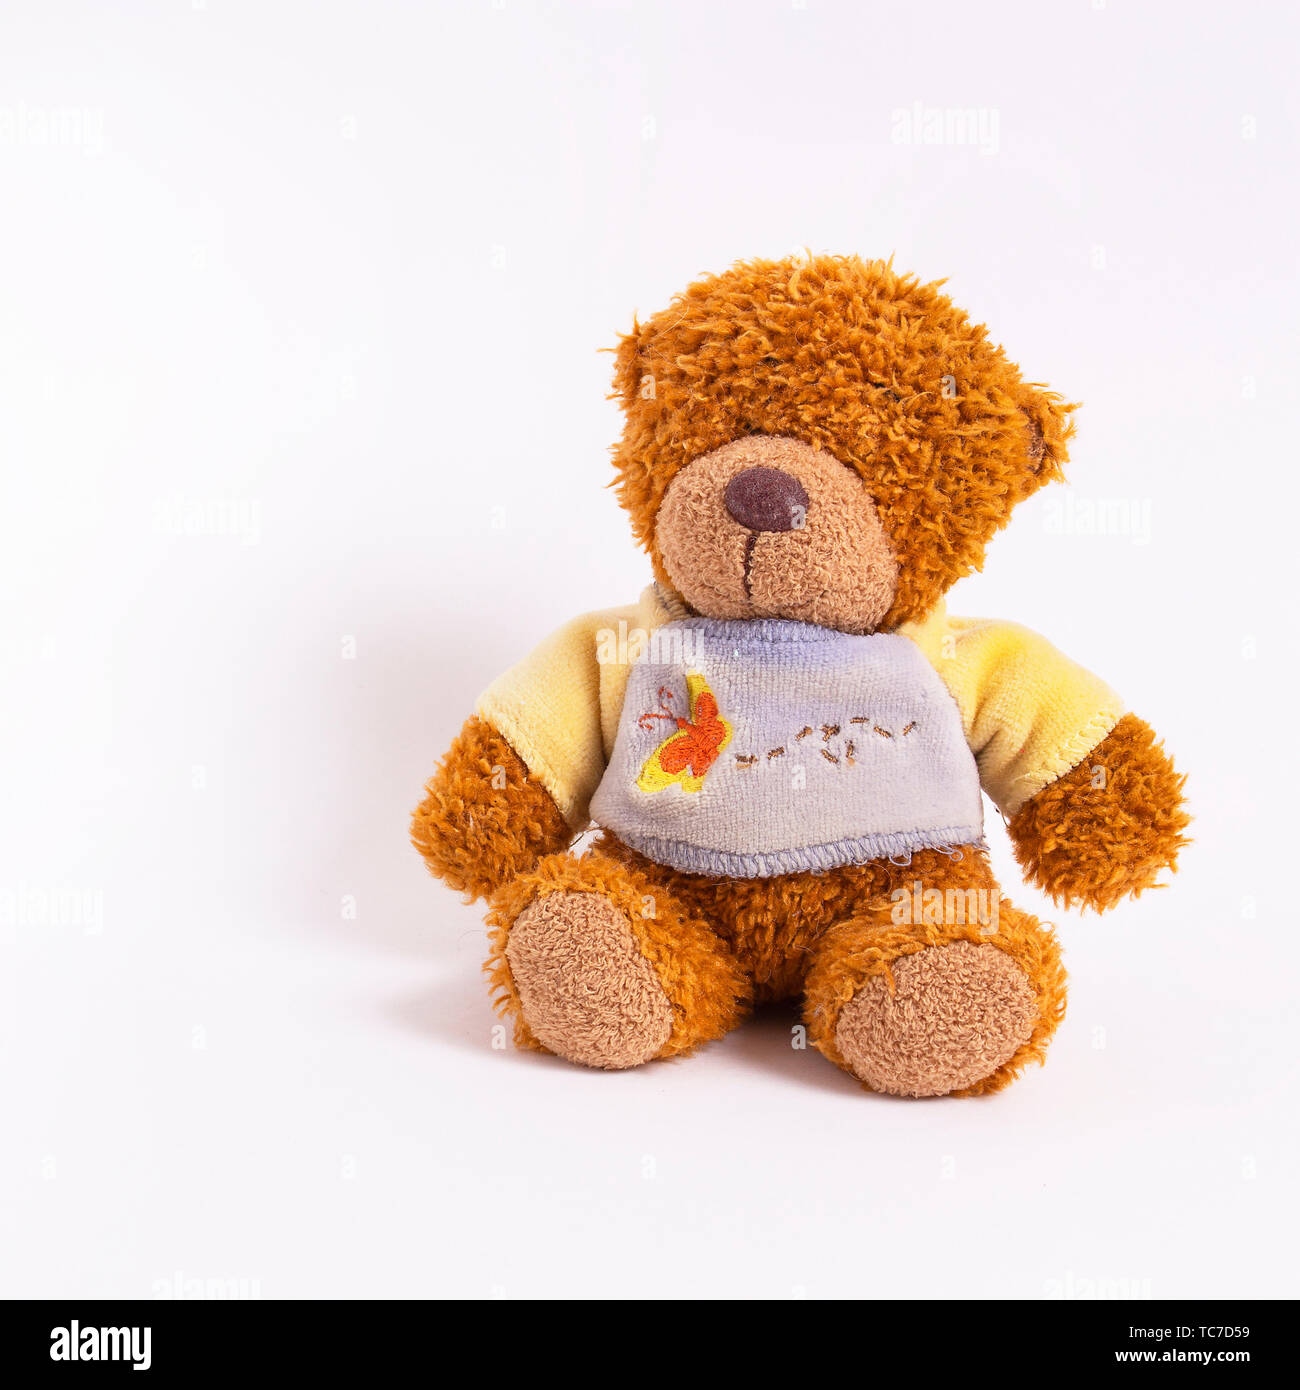 Ein kleiner Teddybär in einer gelb-blauen Pullover sitzt auf einem weißen  Hintergrund. Kinder- Soft Toy. Glückliche Kindheit Stockfotografie - Alamy